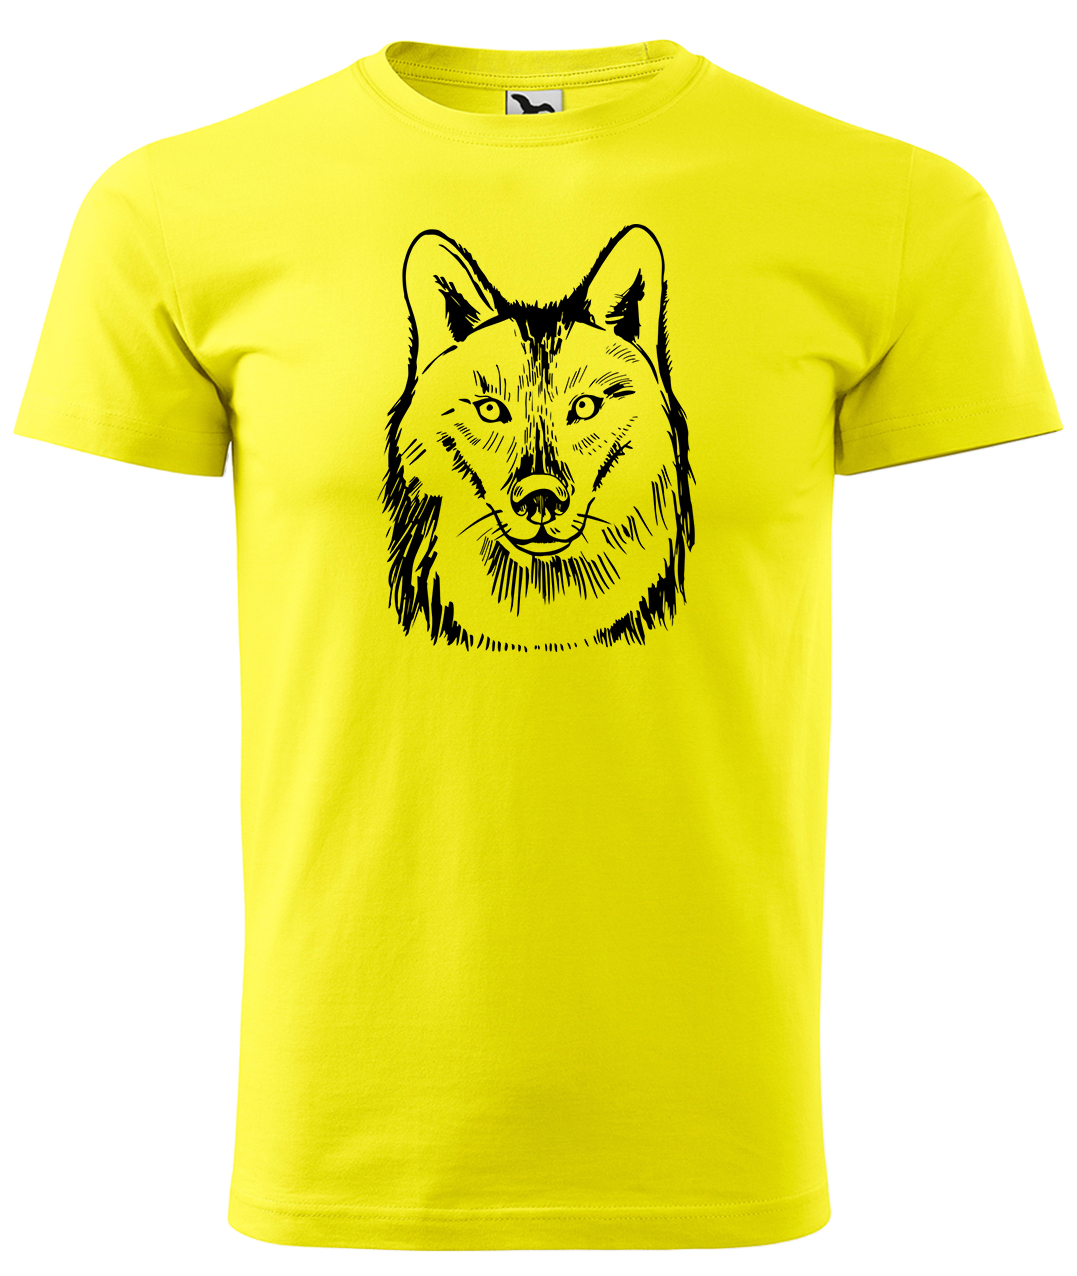 Dětské tričko s vlkem - Kresba vlka Velikost: 8 let / 134 cm, Barva: Žlutá (04), Délka rukávu: Krátký rukáv